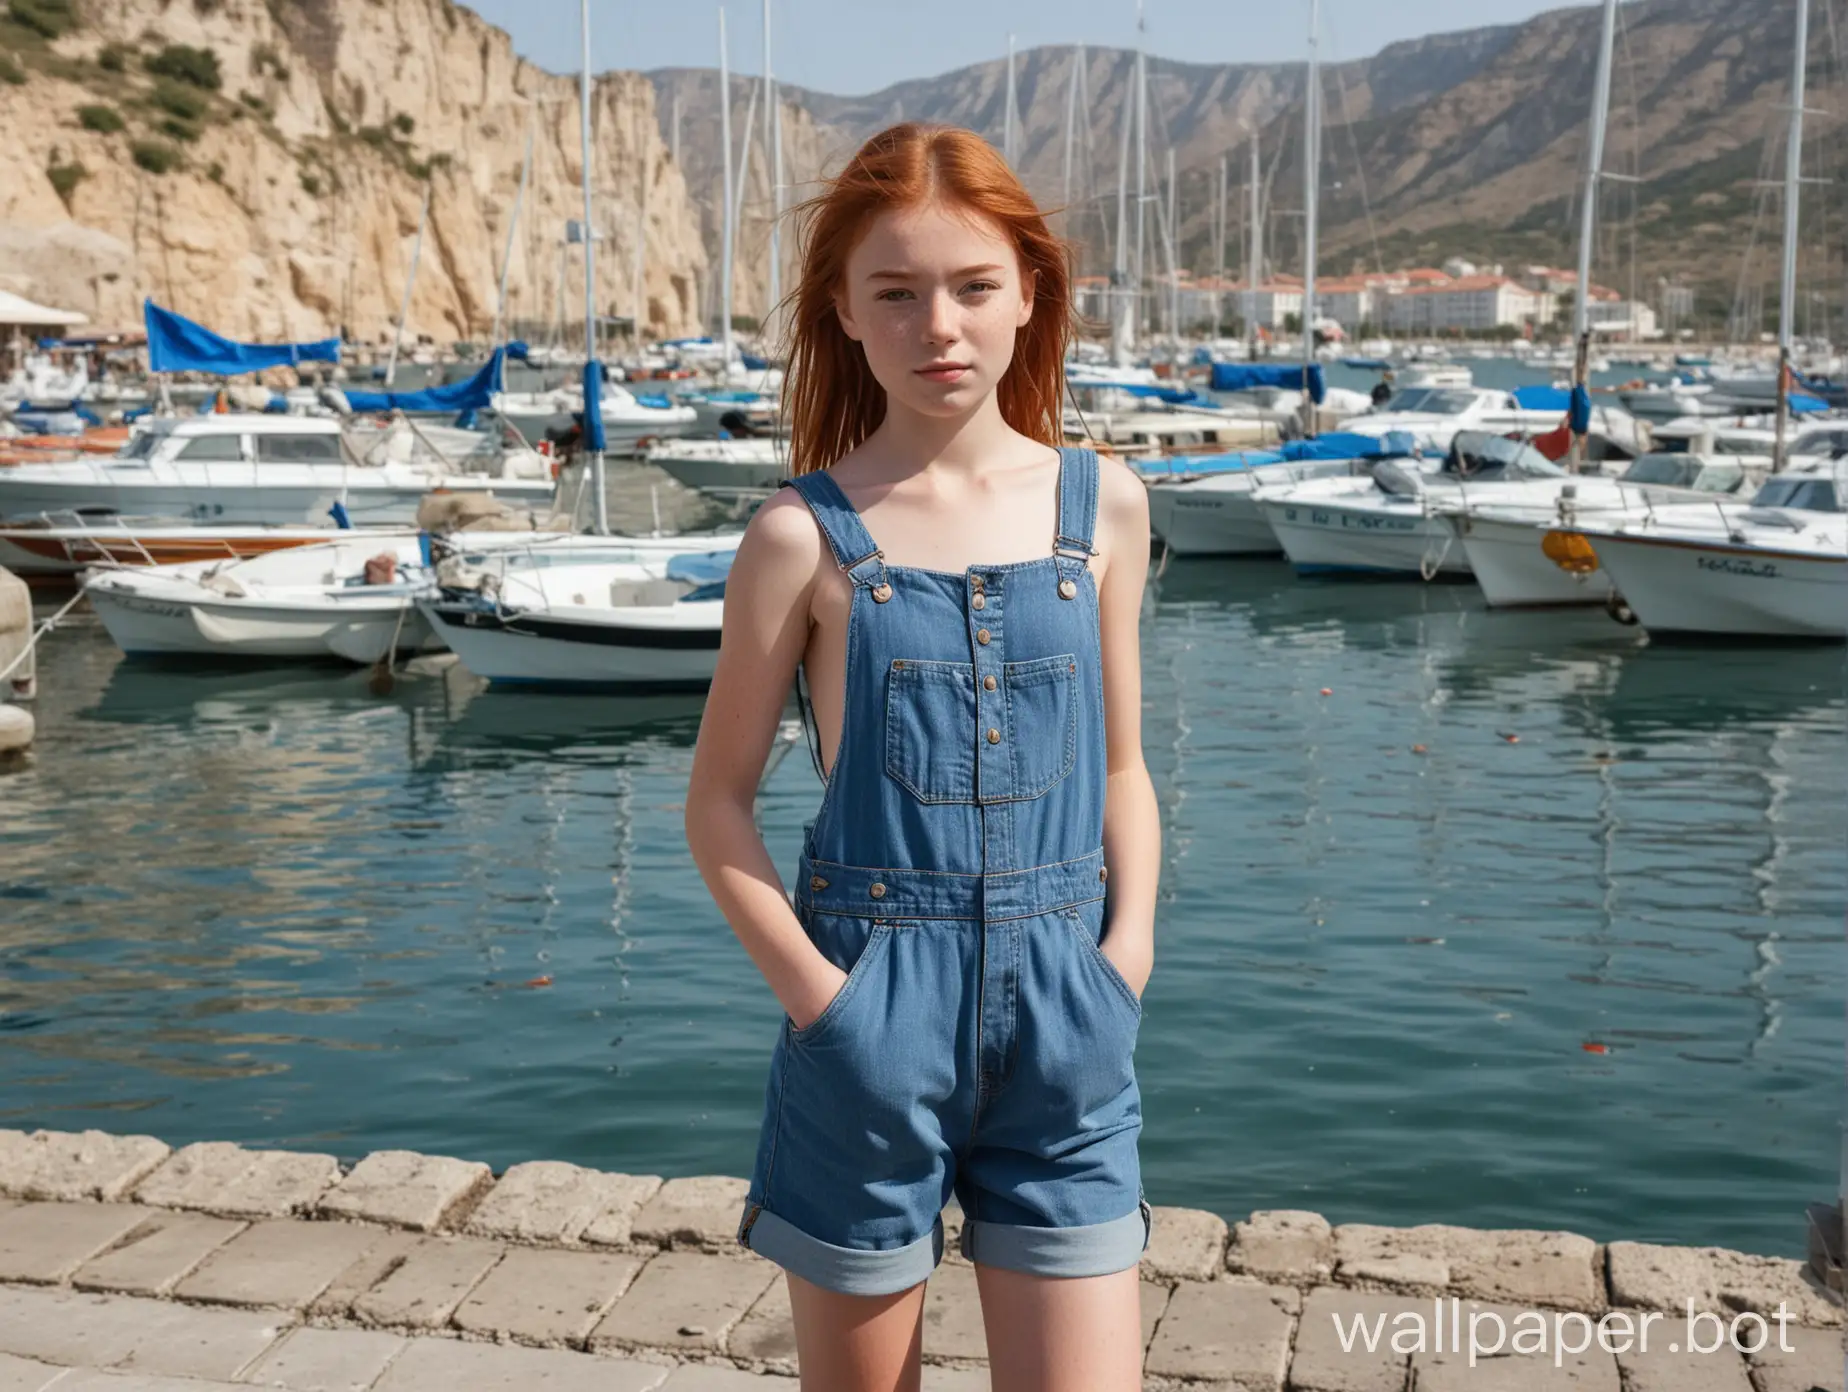 Крым, вид на набережную с лодками и яхтами, рыжеволосая девочка 11 лет в коротком джинсовом комбинезоне на голое тело, в полный рост, веснушки на лице, лямки расстёгнуты